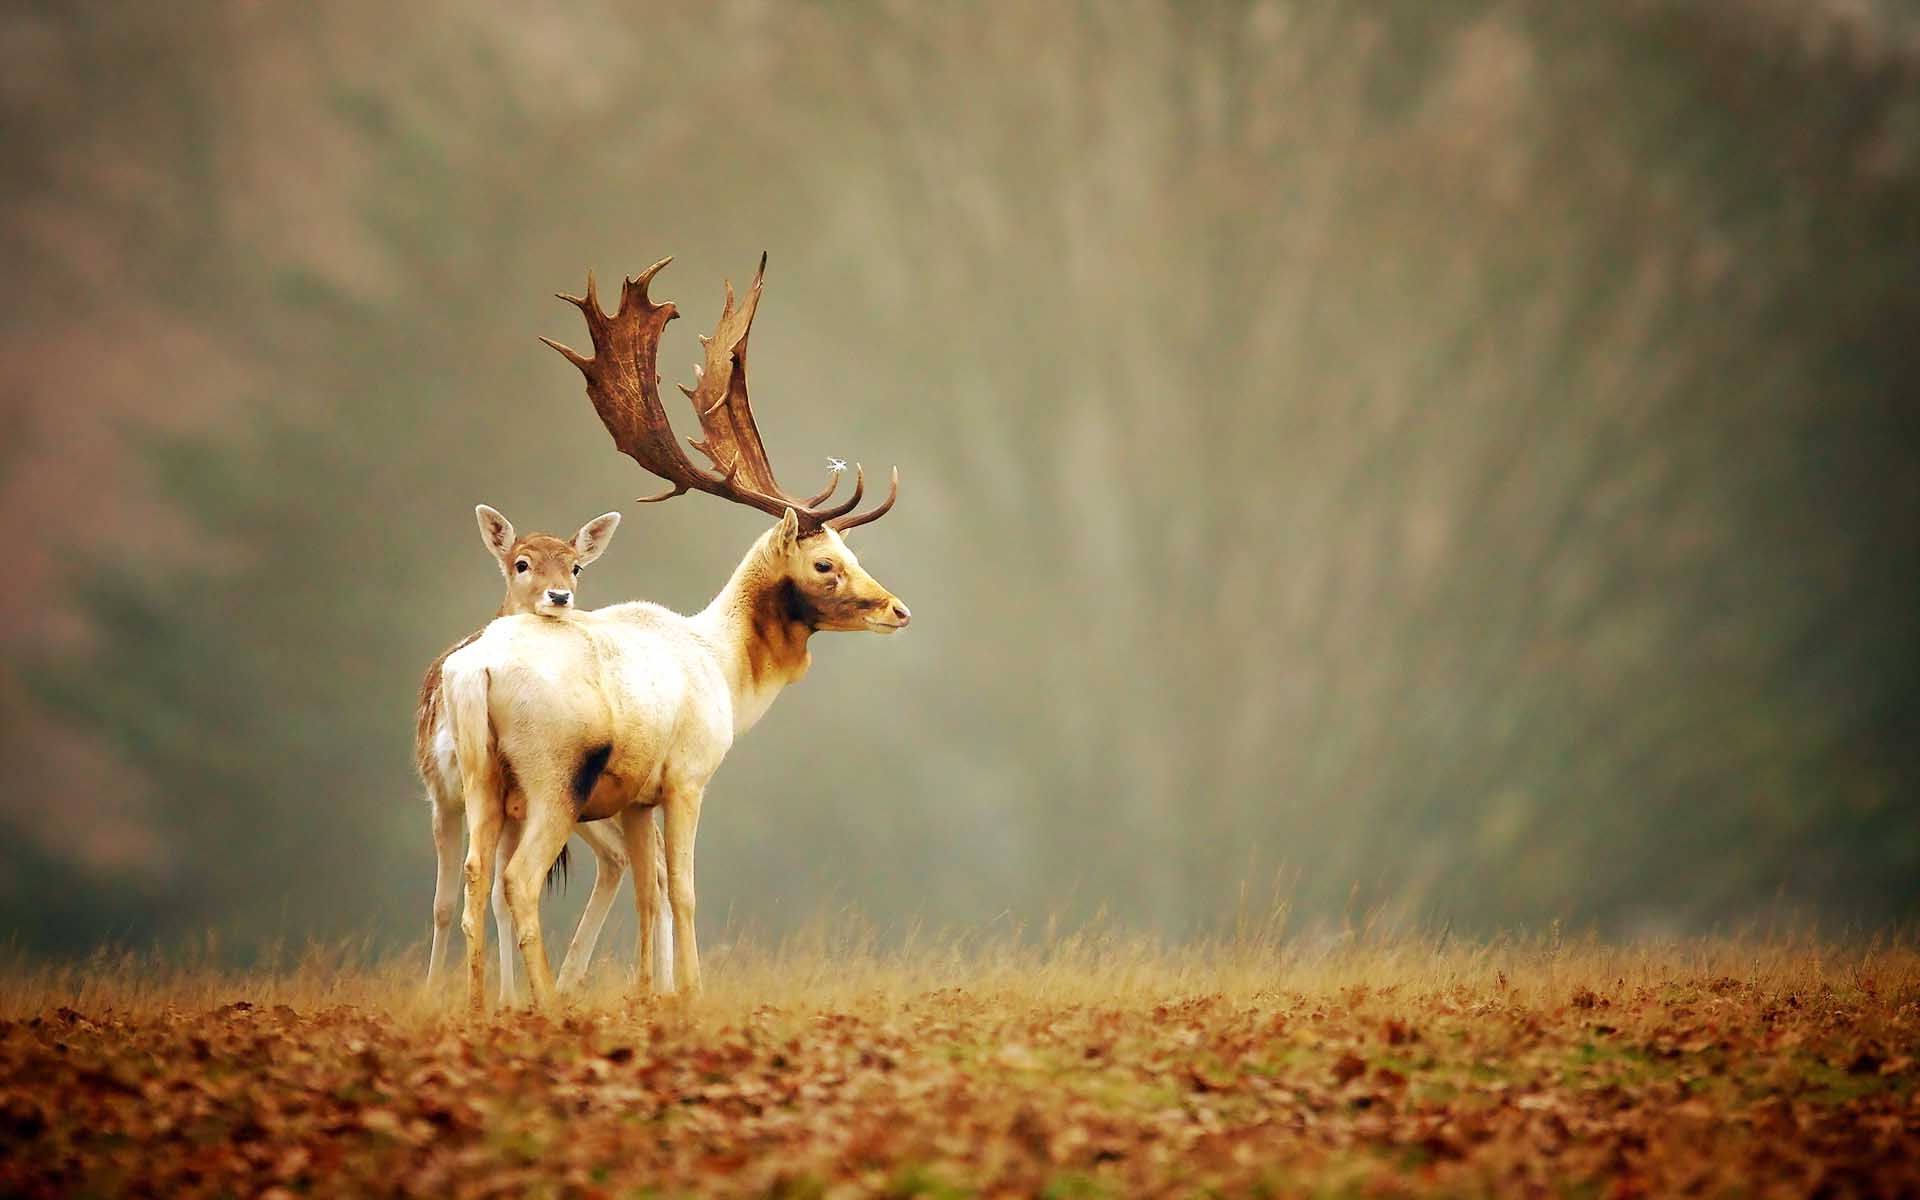 Beautifull Deer HD Wallpaper Free Download. Deer wallpaper, Deer background, Hunting wallpaper